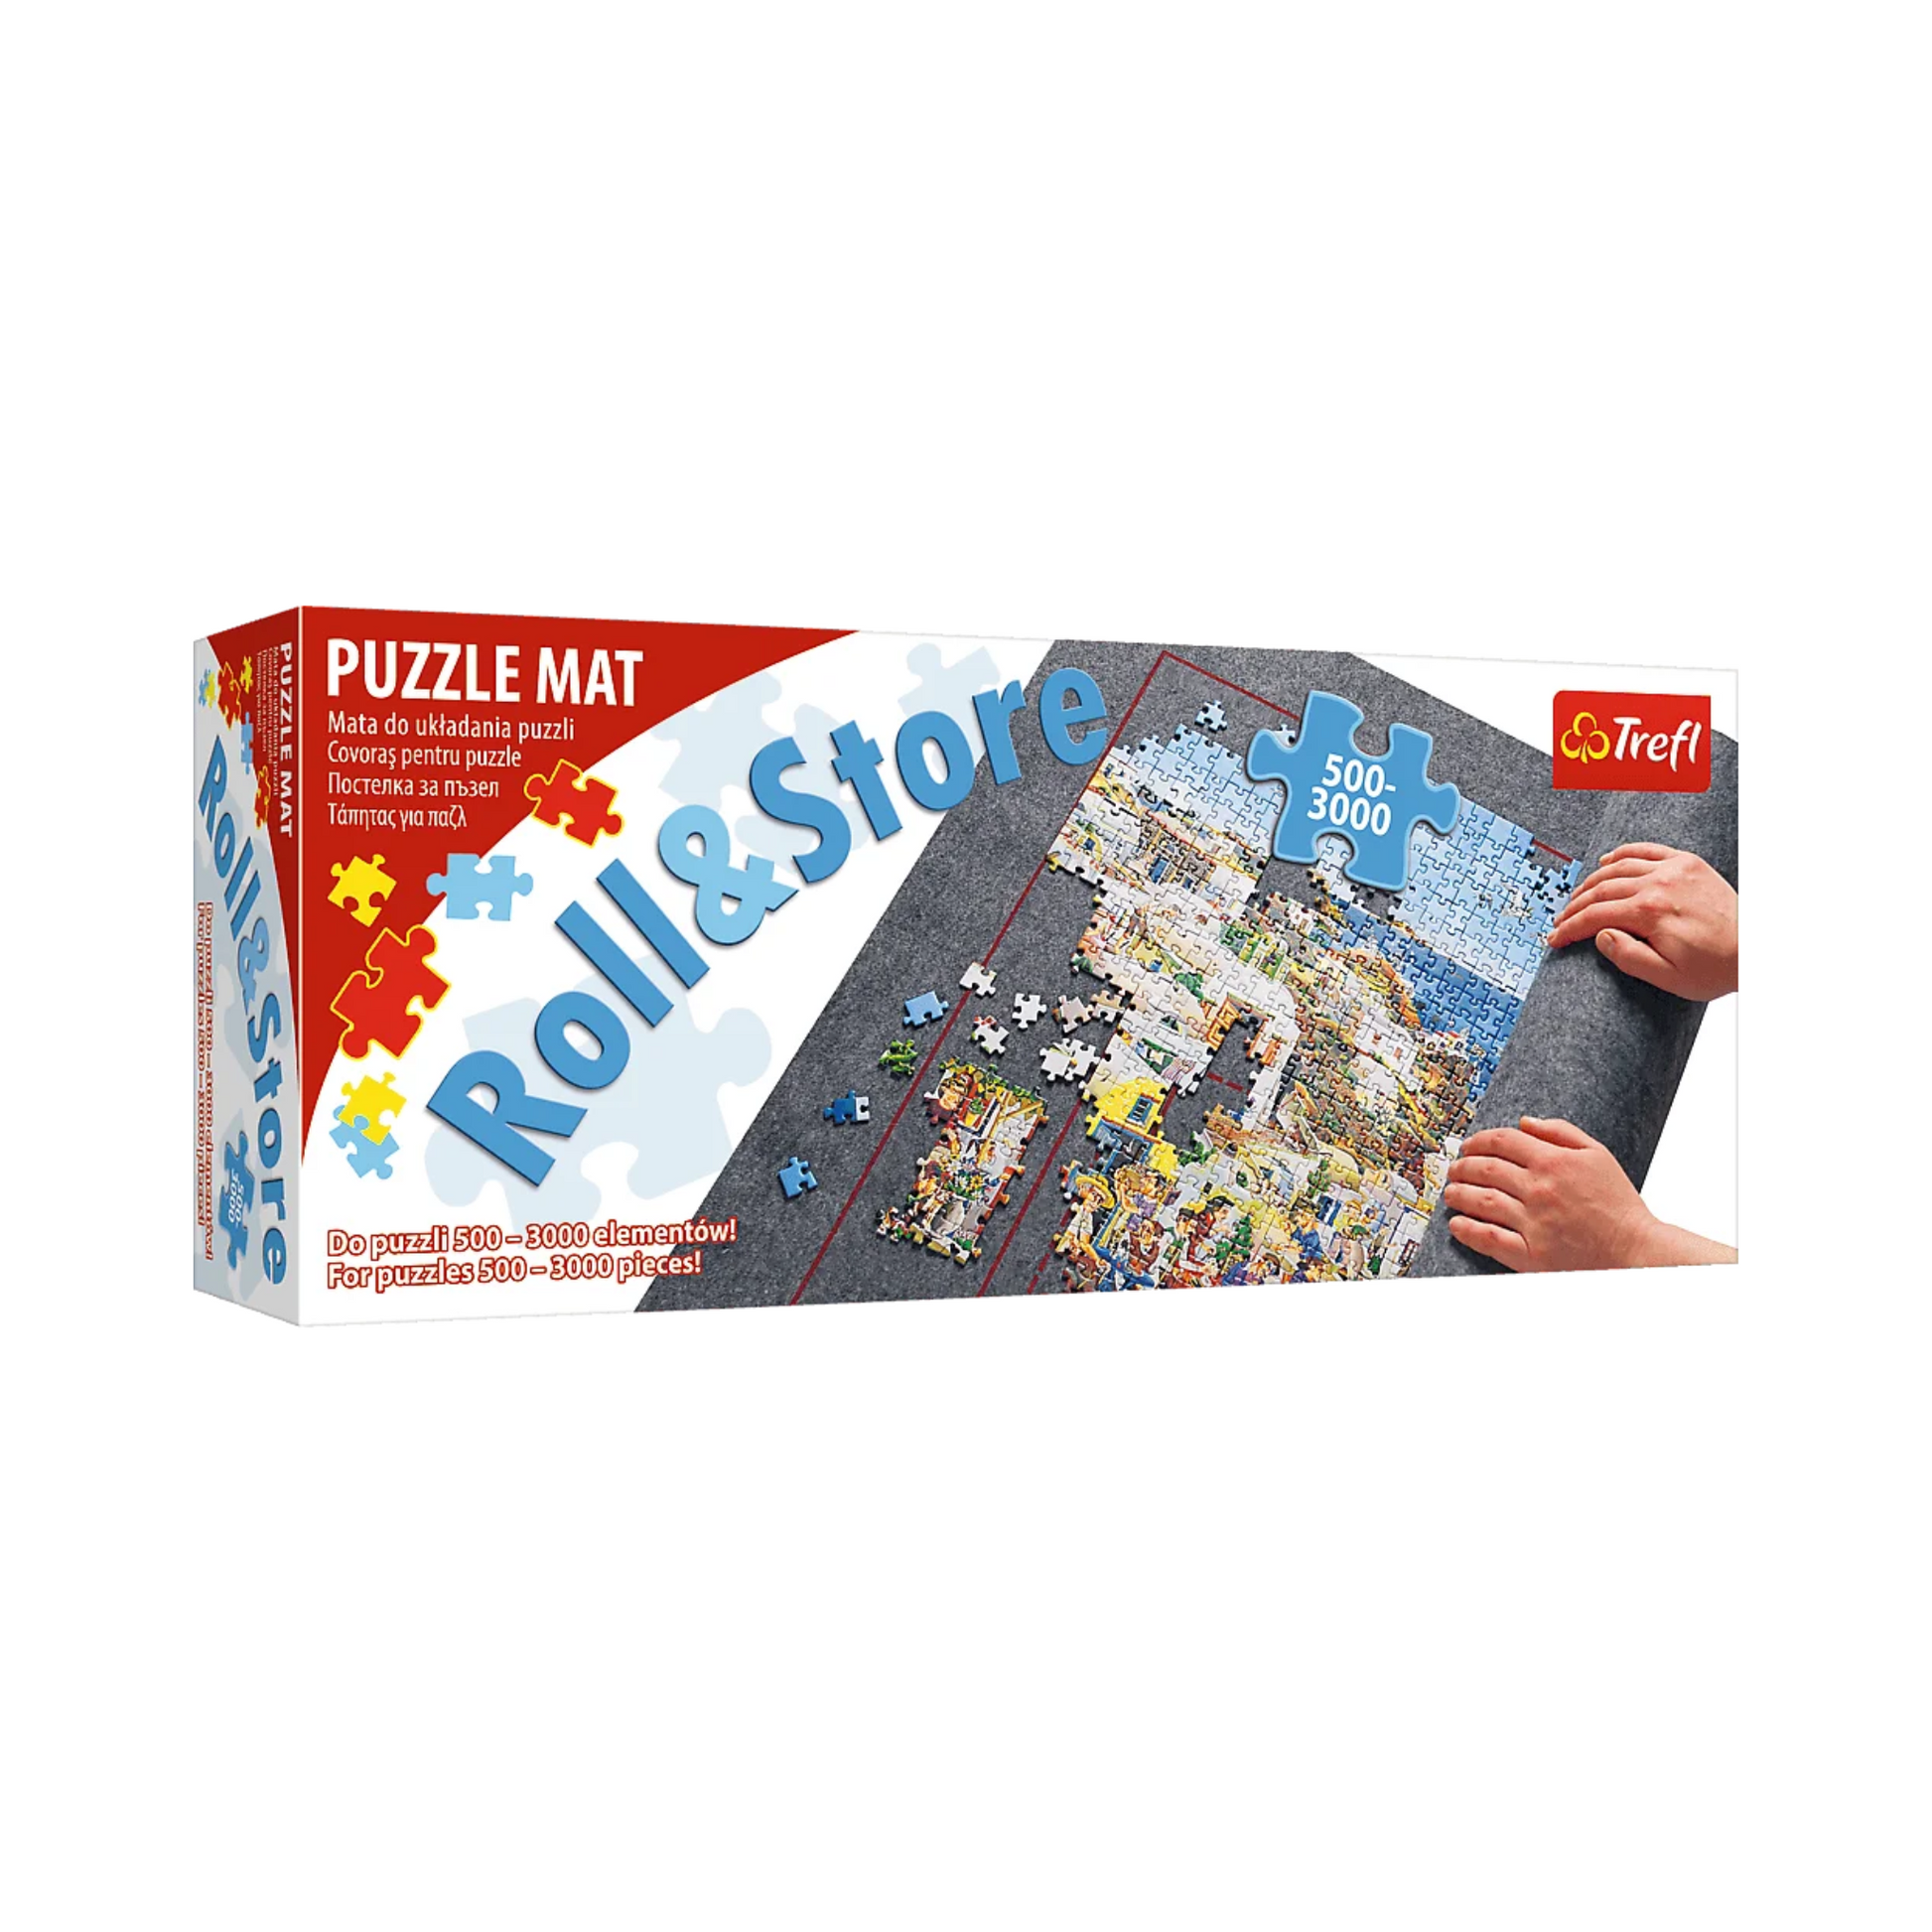 Puzzle & Roll - Tapis Pour Puzzle Jusqu'à 1500 Pièces à Prix